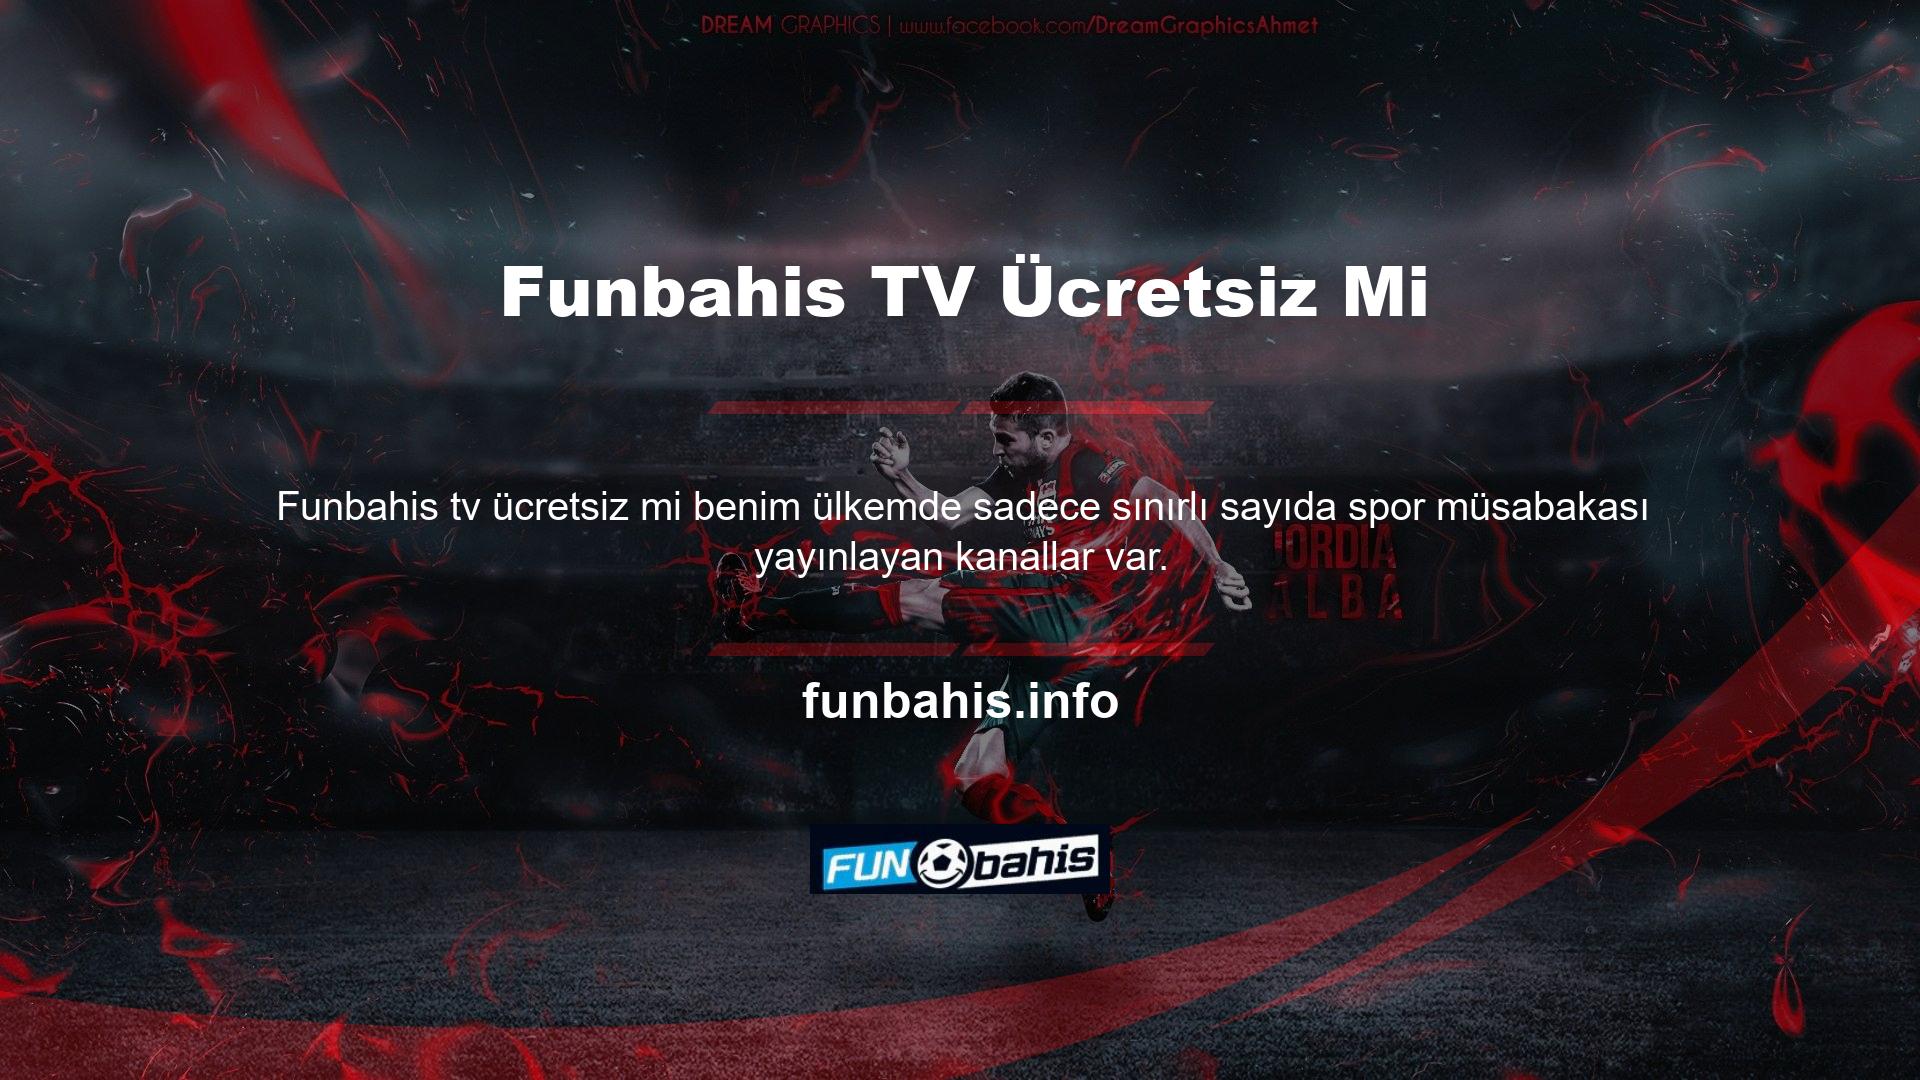 Funbahis Tv bu kuruluşlara ücretli üyelikler sunmakta ve müşterilerine izledikleri sporun tüm branşlarına ücretsiz erişim sağlamaktadır